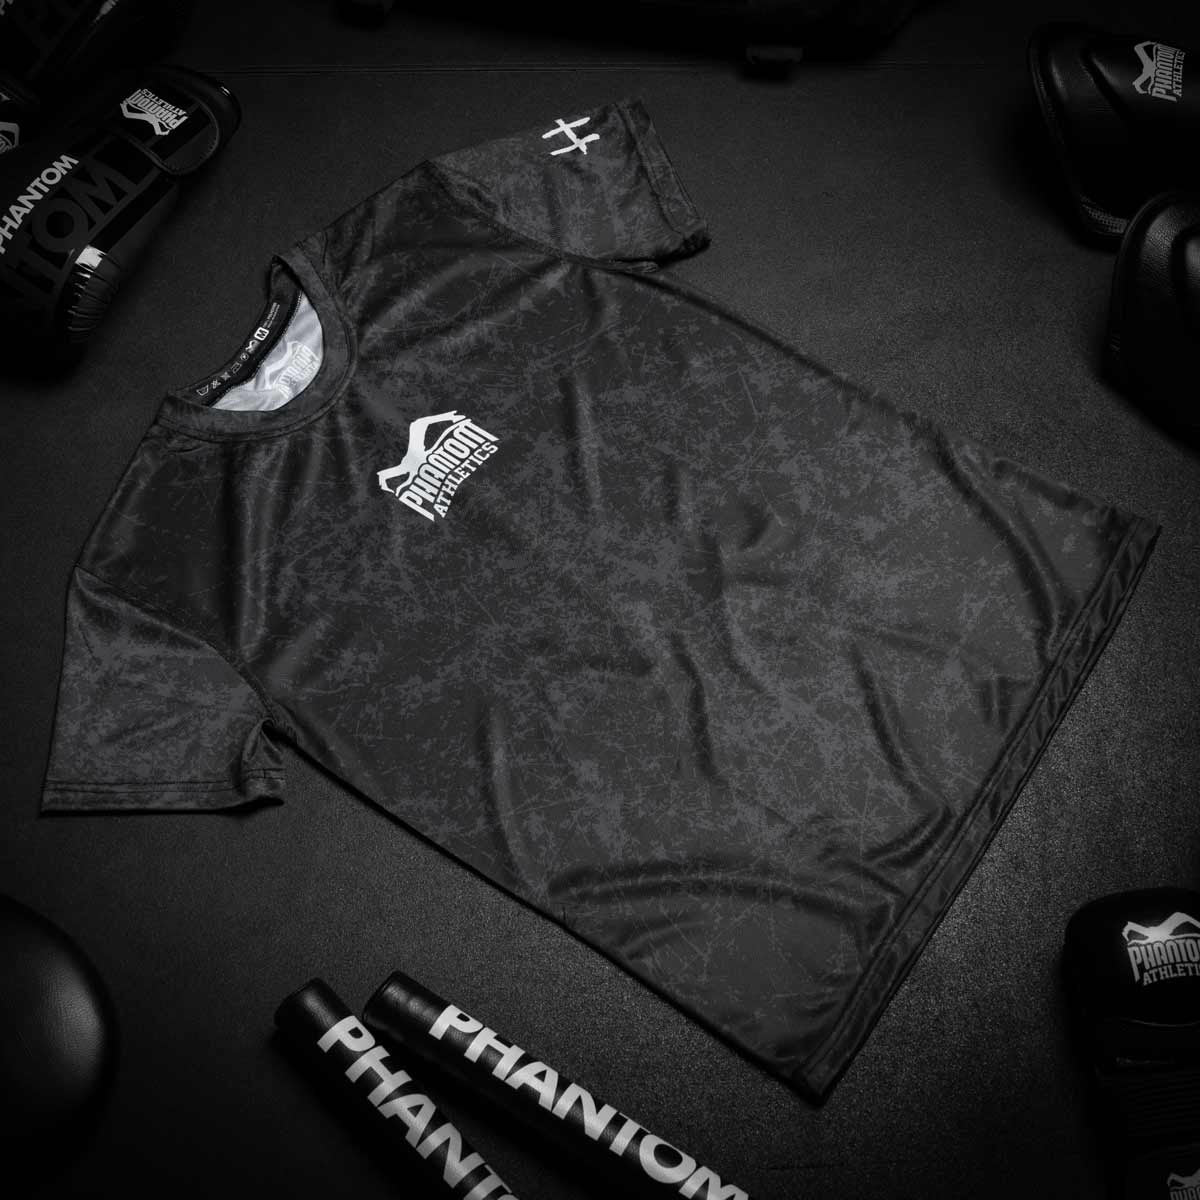 Phantom EVO Trainingsshirt für Kampfsport. Mit Smiley Serious Grafik am Rücken. Hochwertiger Sublimationsdruck für eine lange Lebensdauer im Kampfsporttraining.